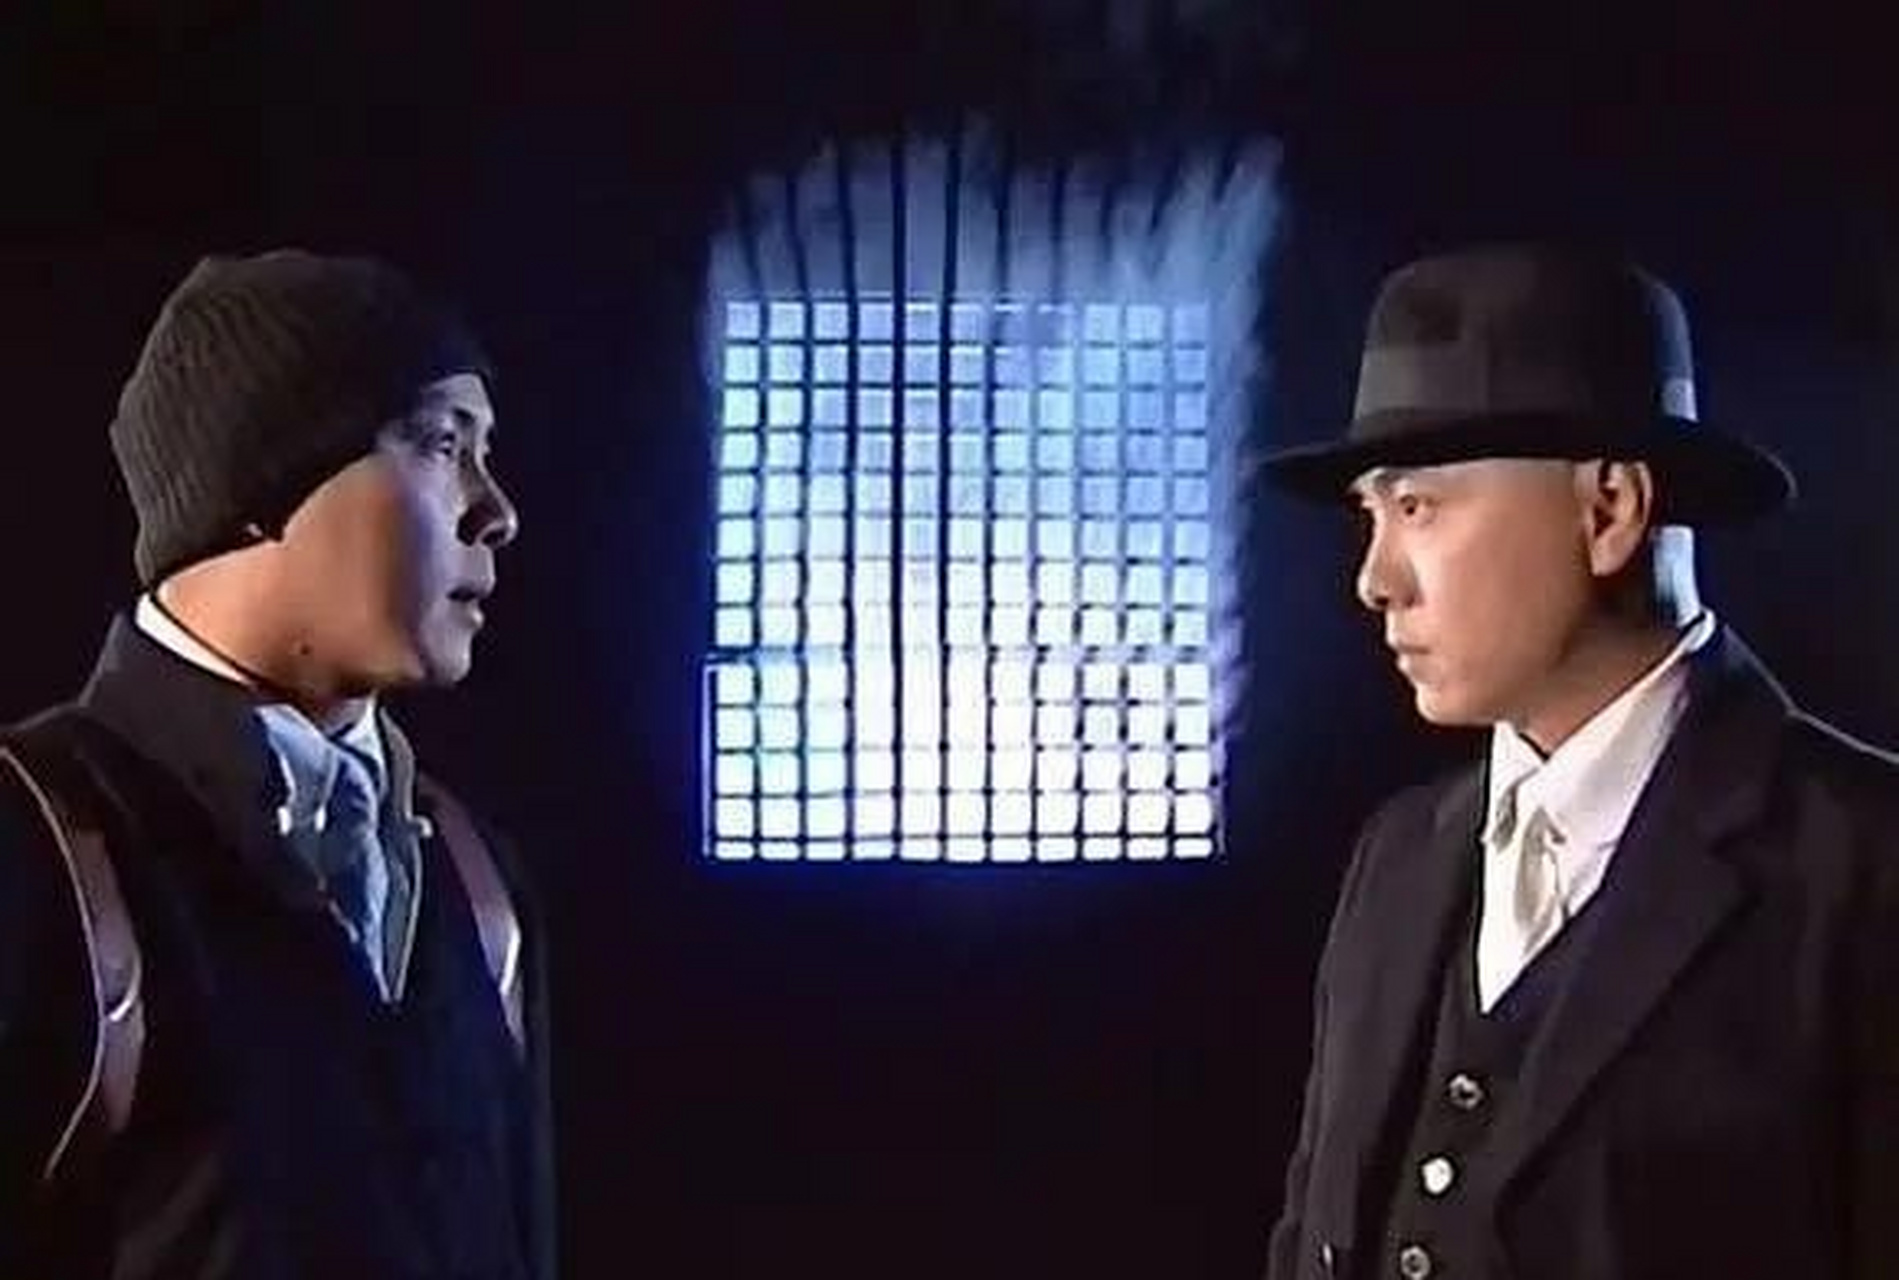 电视剧《方谬神探》在2002年中国大陆上映,该剧作为刘德华投资拍摄的